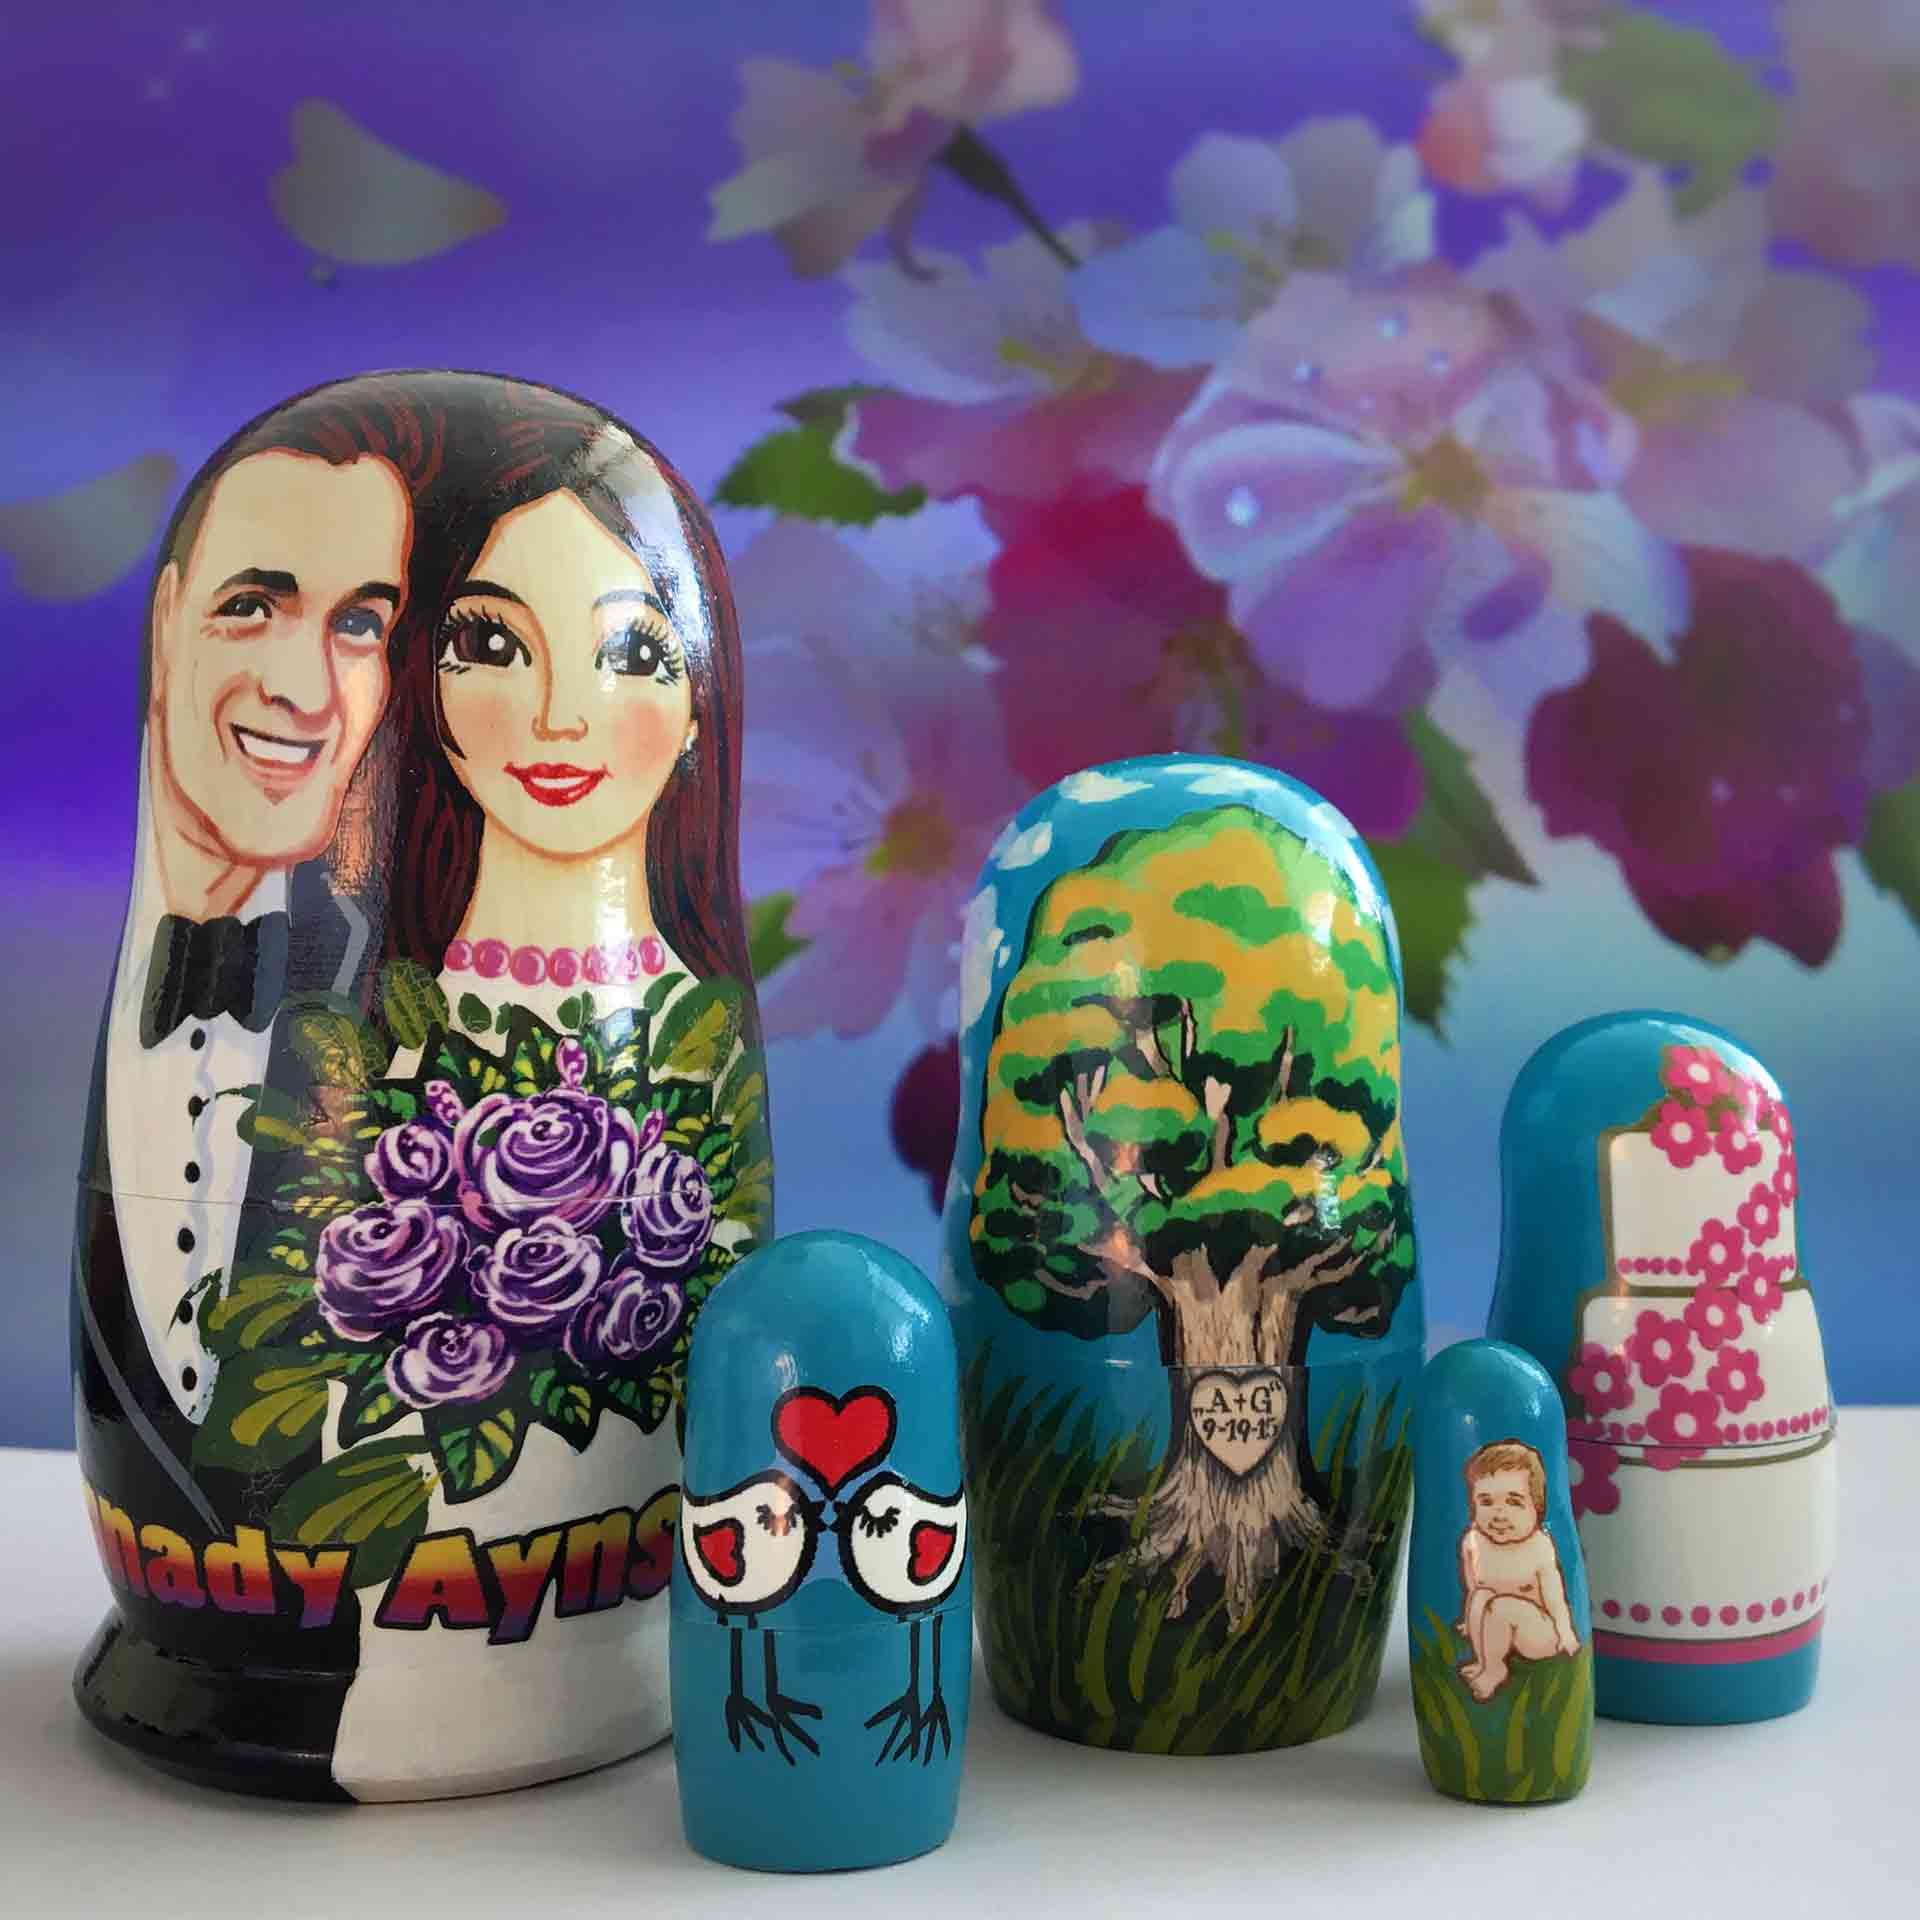 Bespoke Custom Nesting Doll – Wedding Favors